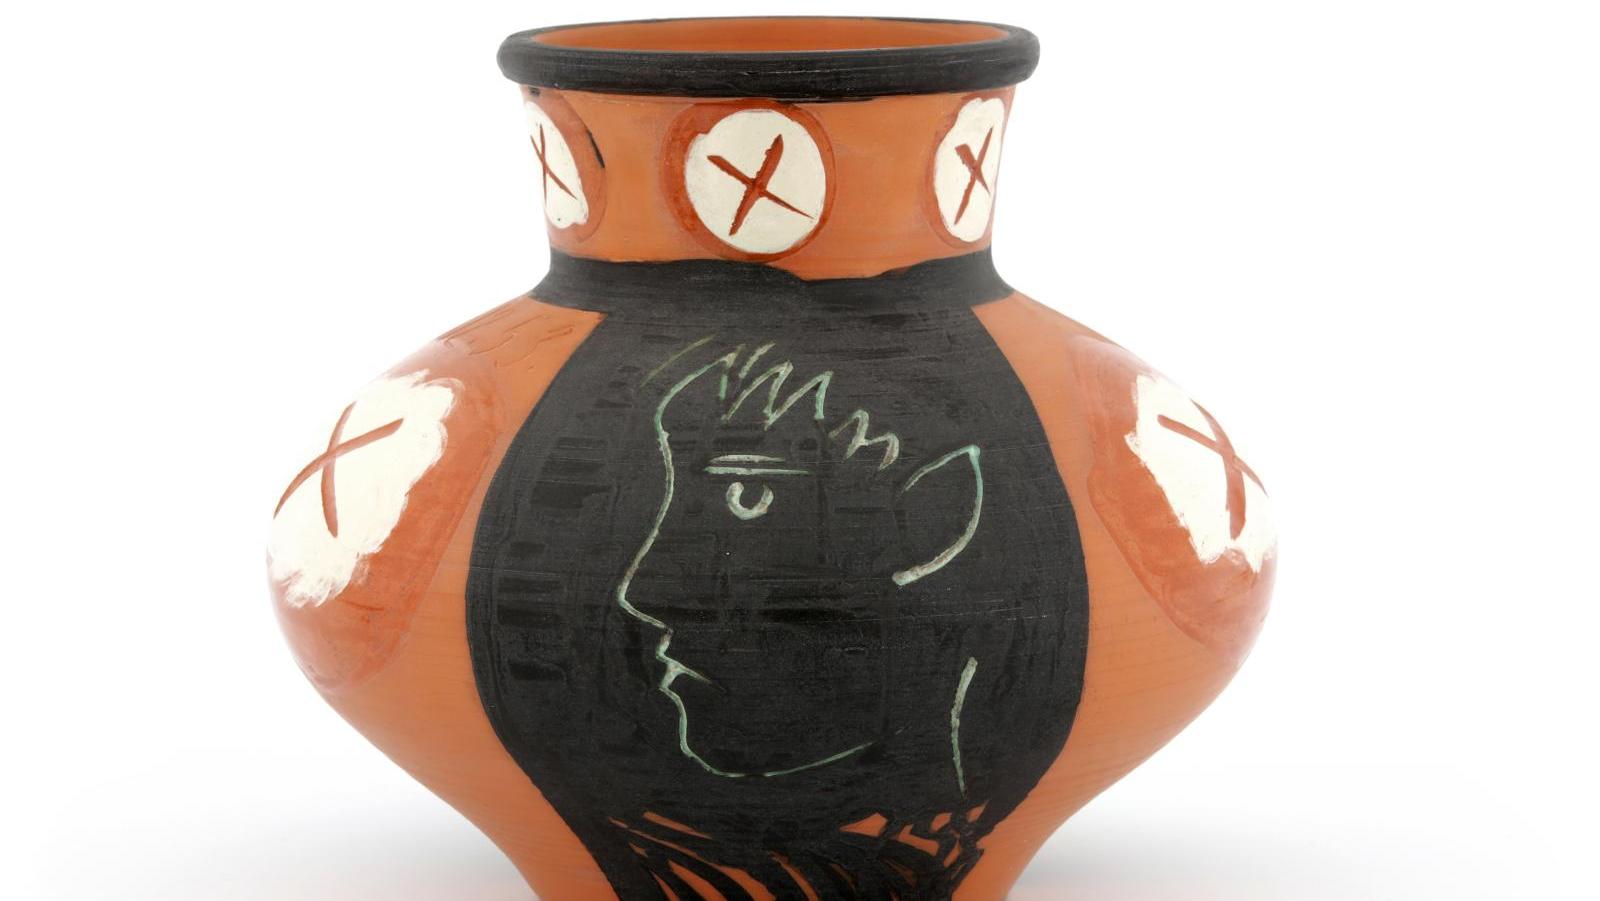 Pablo Picasso (1881-1973) et Atelier Madoura, Vase au visage de profil, 1953, céramique,... Un «Parcours céramiques»  jalonné par Ramié, Picasso et Capron